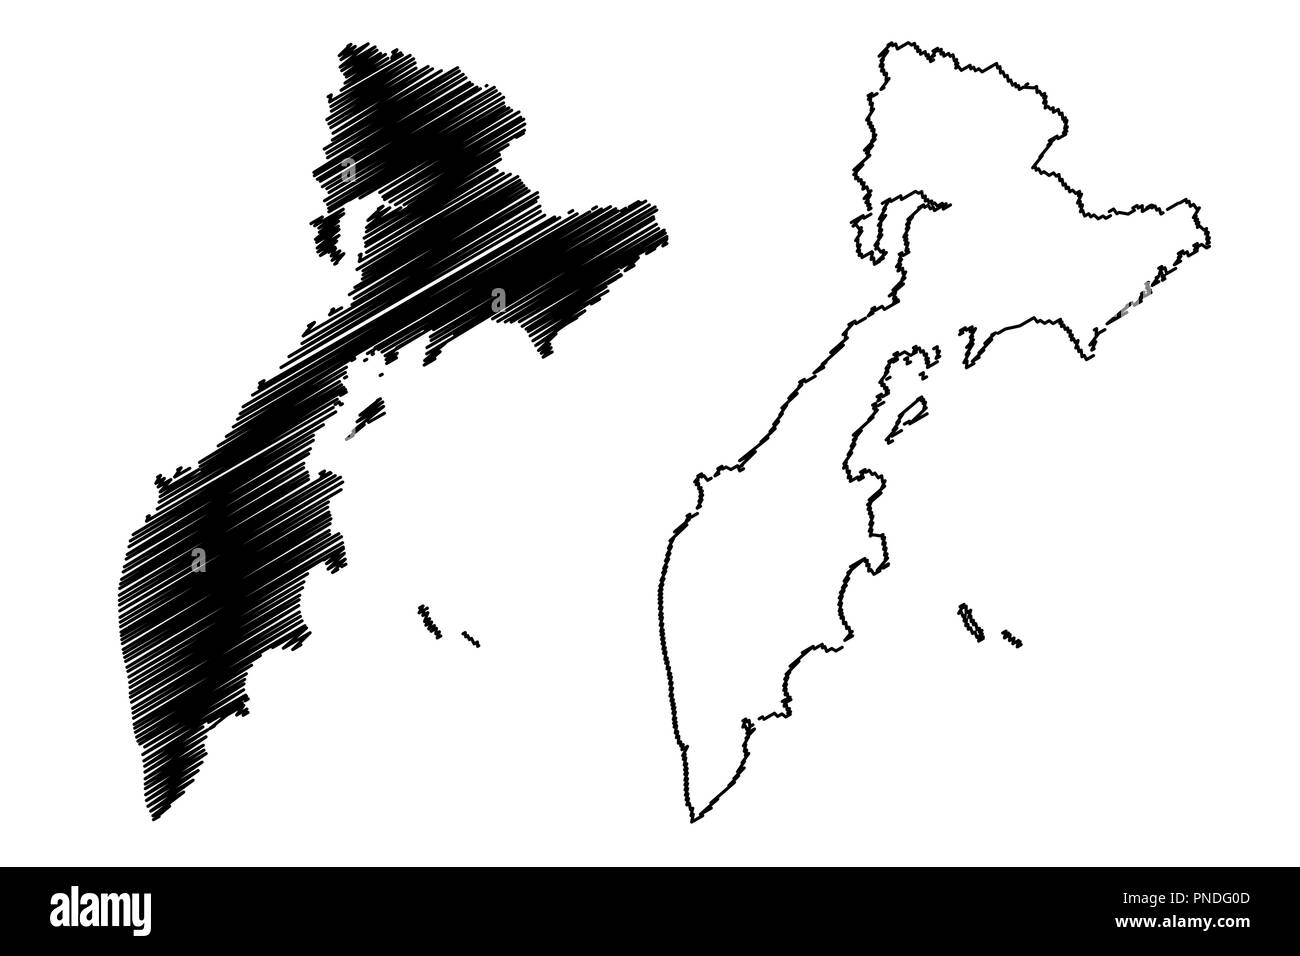 Kamtschatka (Russland, Subjekte der Russischen Föderation, Krais Russlands) Karte Vektor-illustration, kritzeln Skizze Kamtschatka Karte Stock Vektor